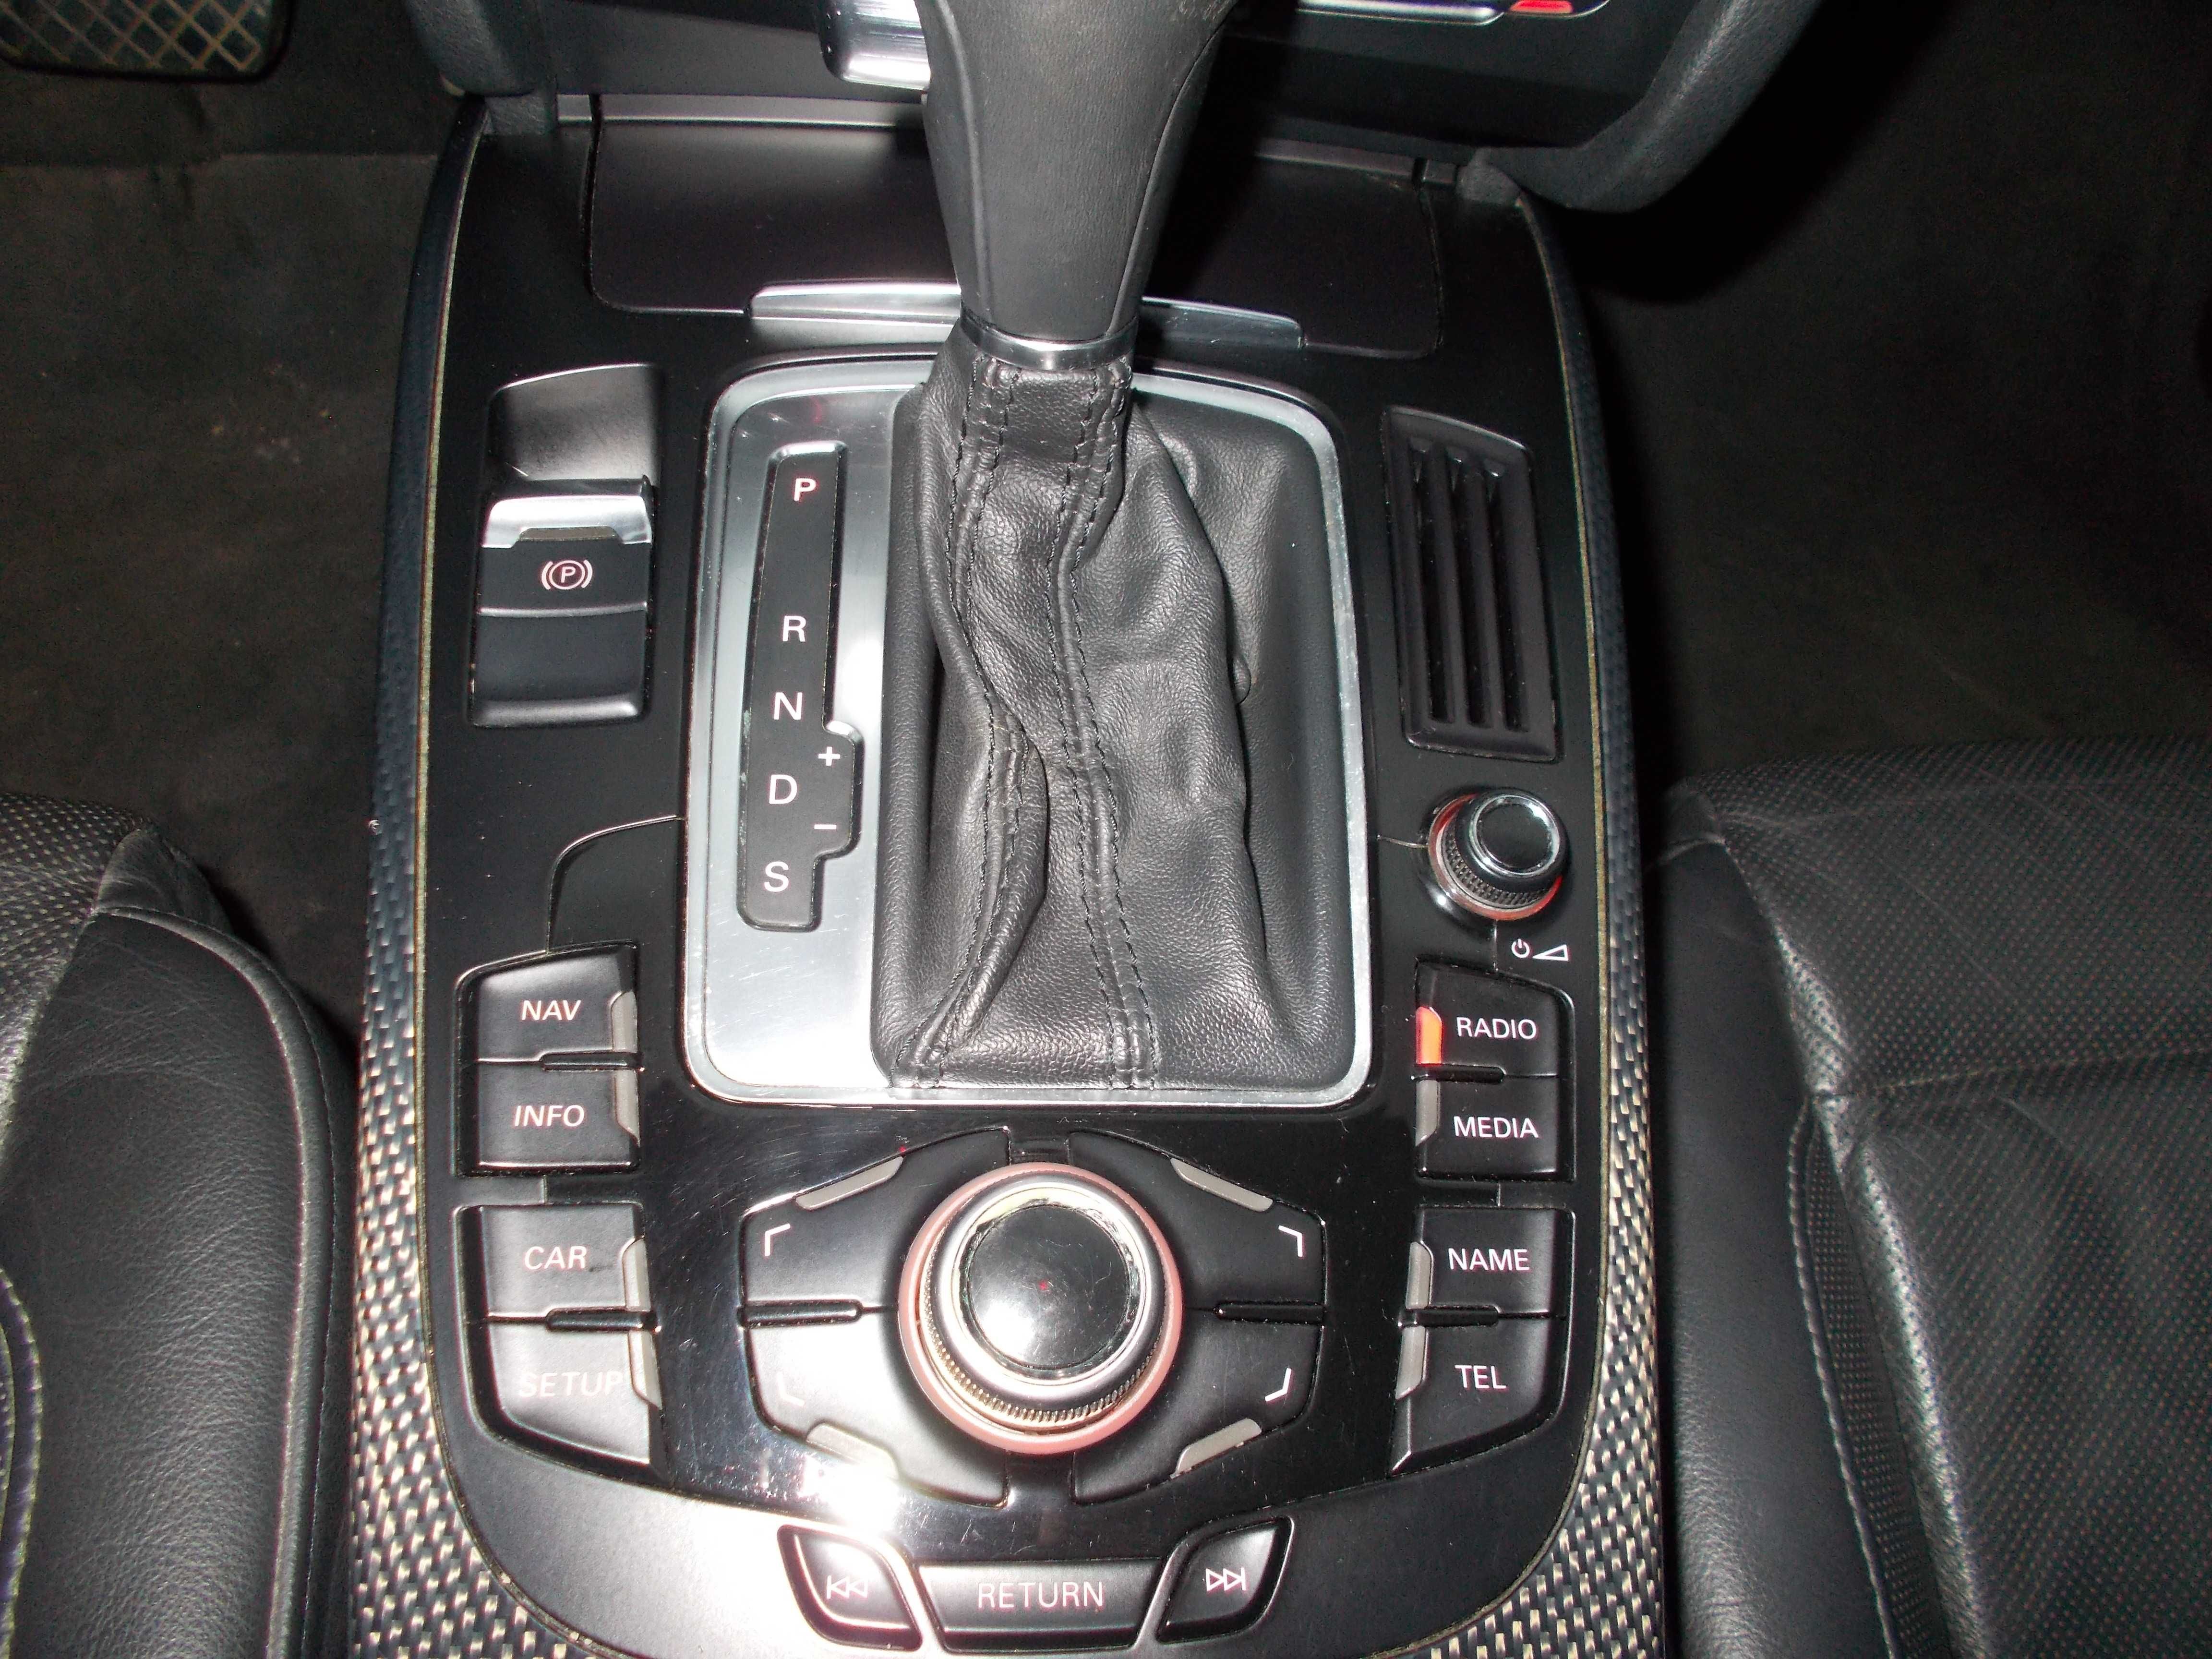 Audi S5 4,2 V8 2008 rok 345 kM automat zarejestrowany Quattro